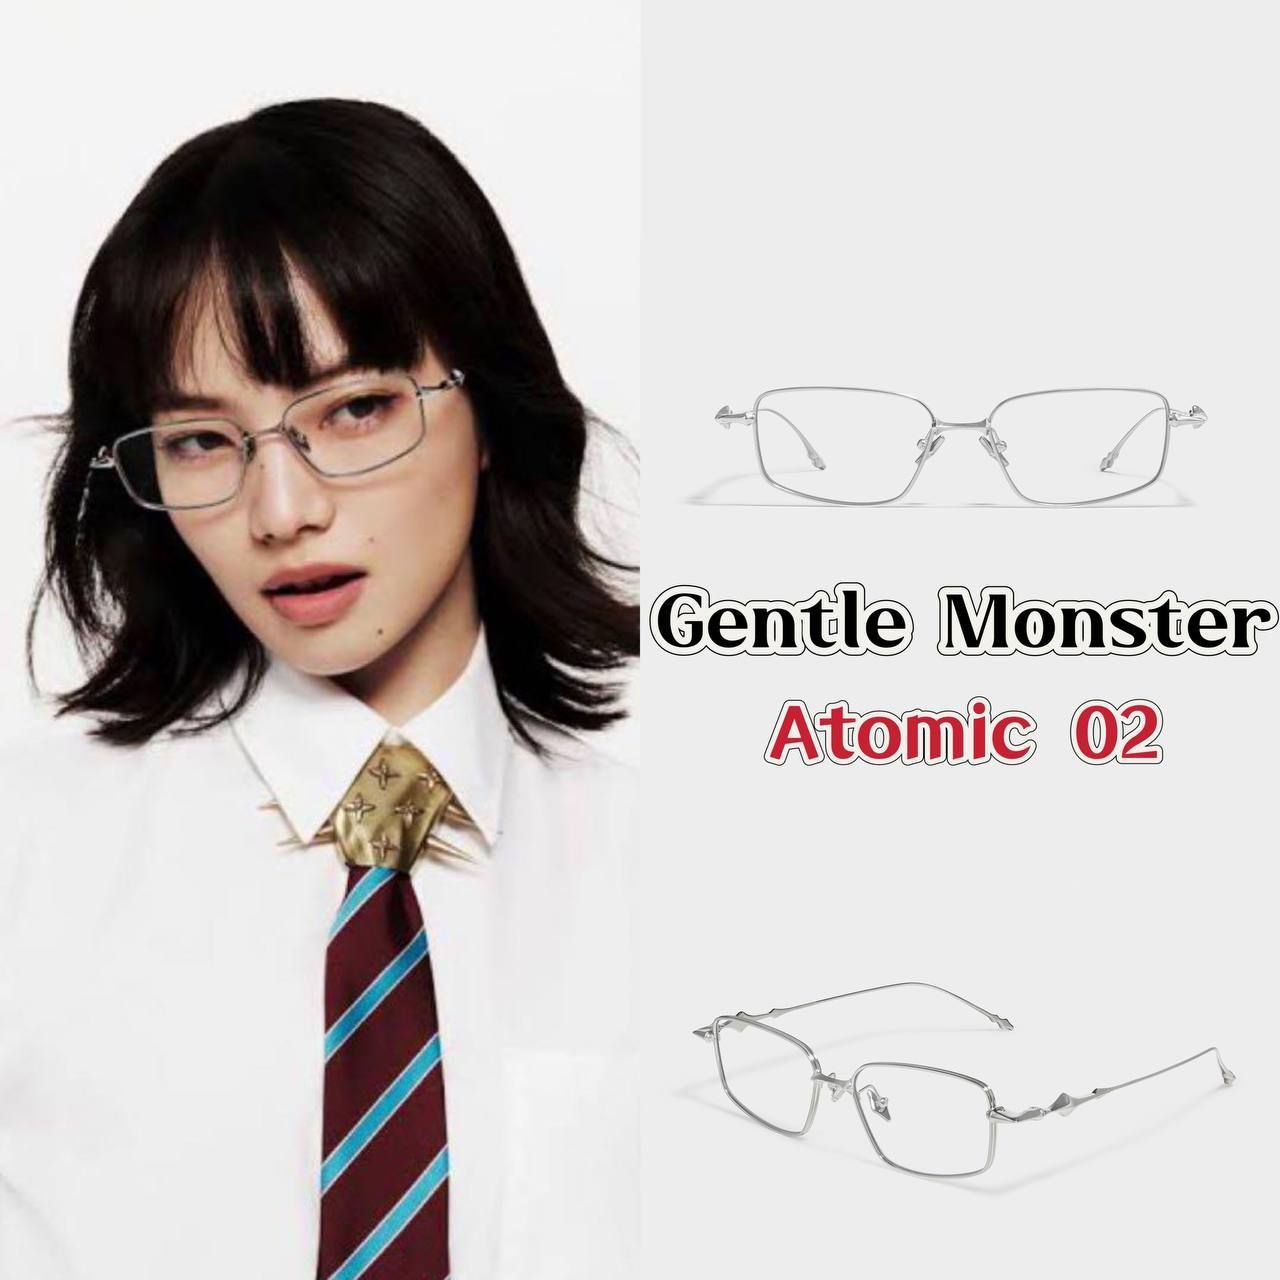 ジェントルモンスター GENTLE MONSTER 小松菜奈 Atomic 02